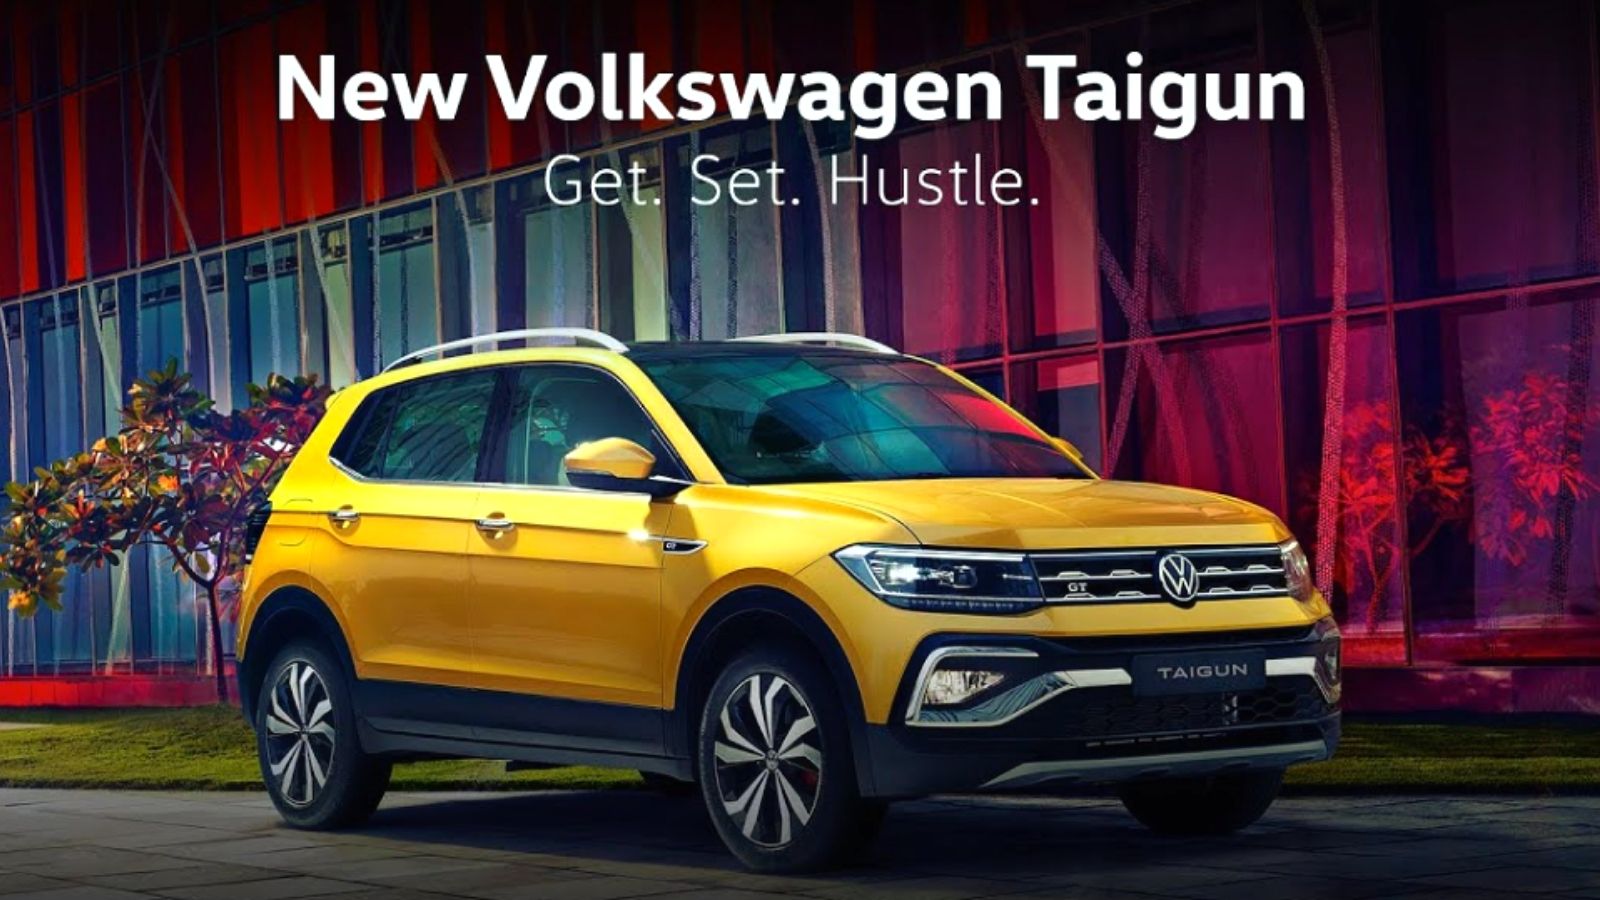 Volkswagen Taigun launched